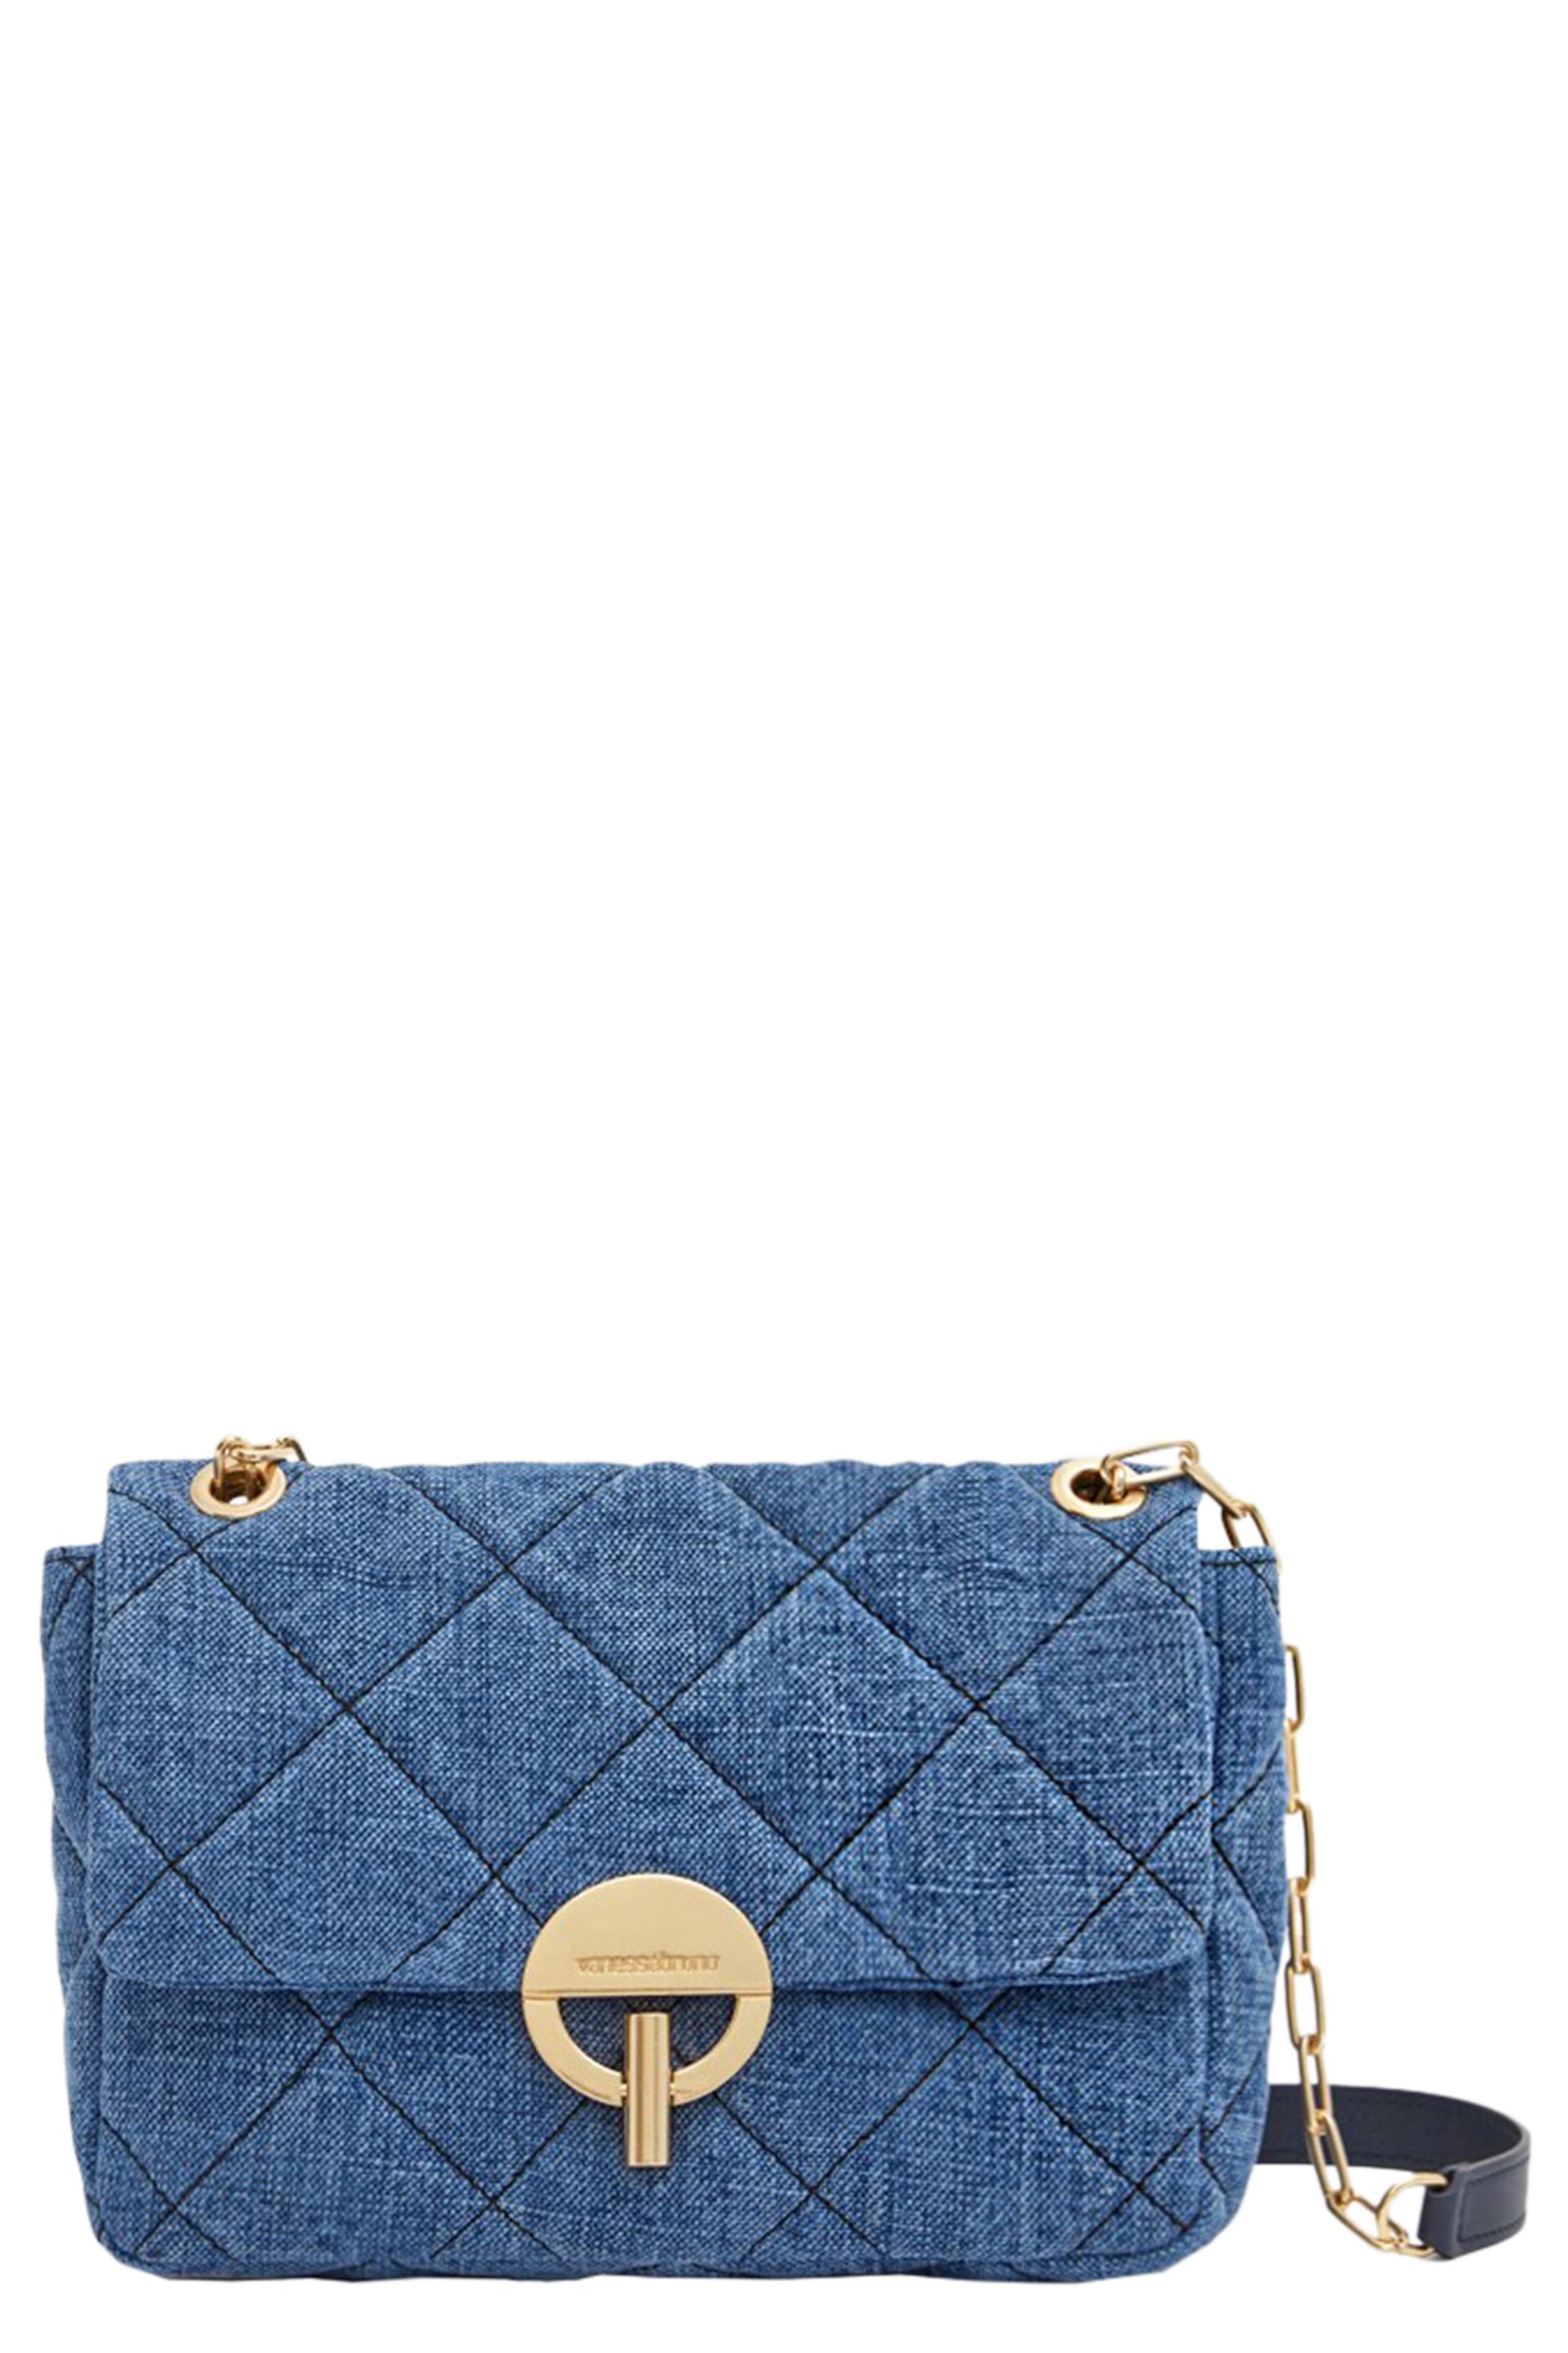 Louis Vuitton Indigo Blue Denim Crop Top Indigo. Size 40